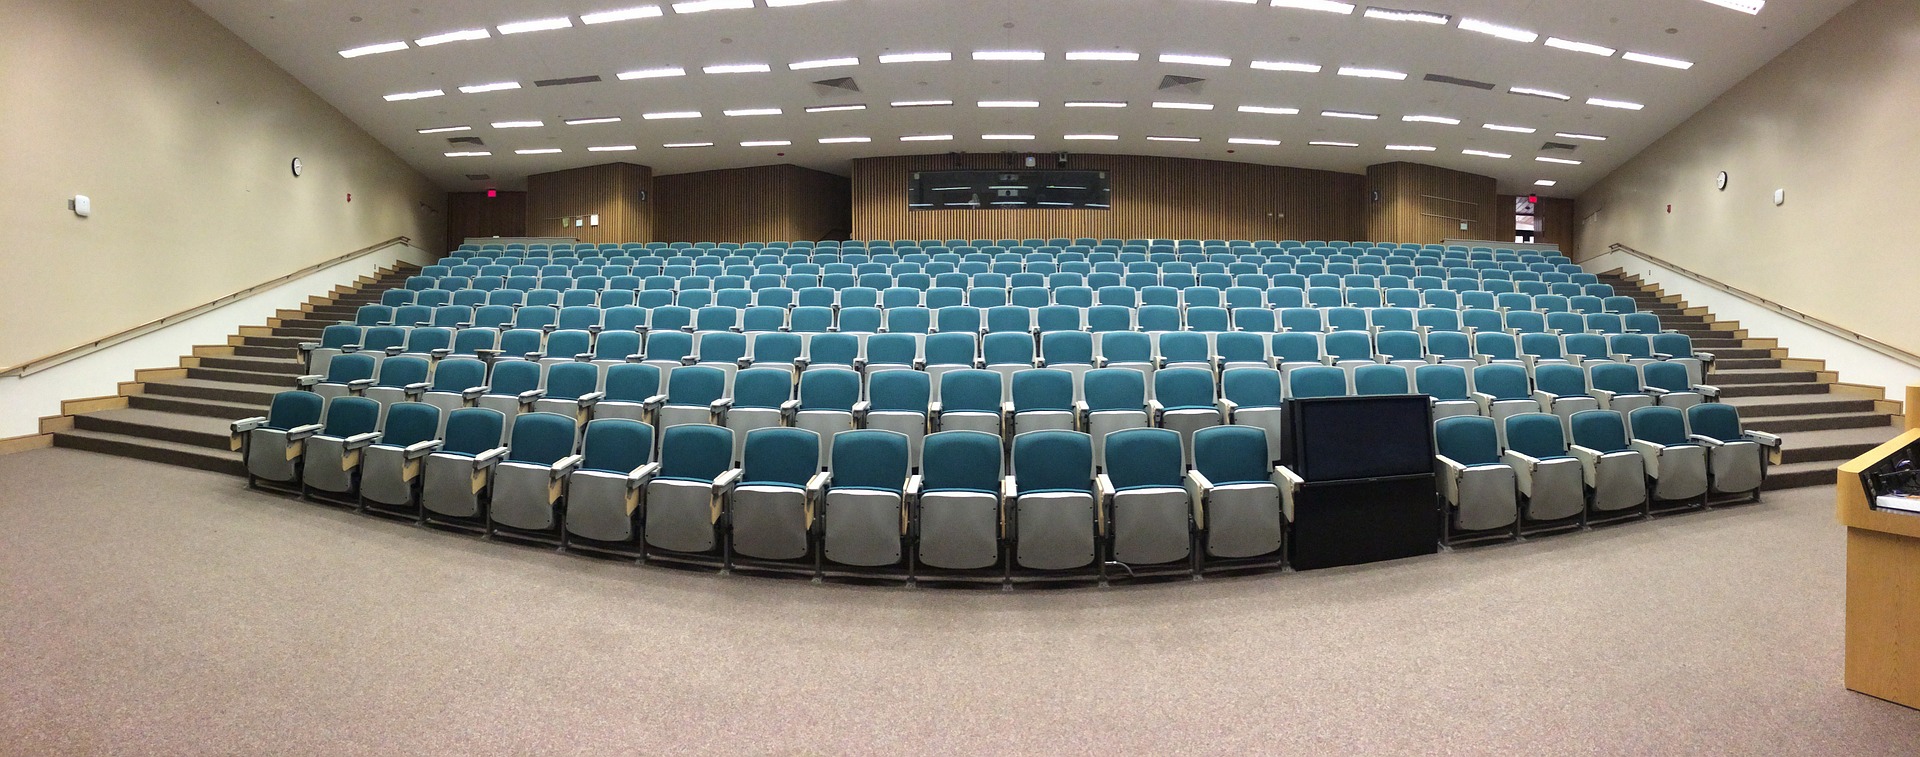 Auditorium seats, empty